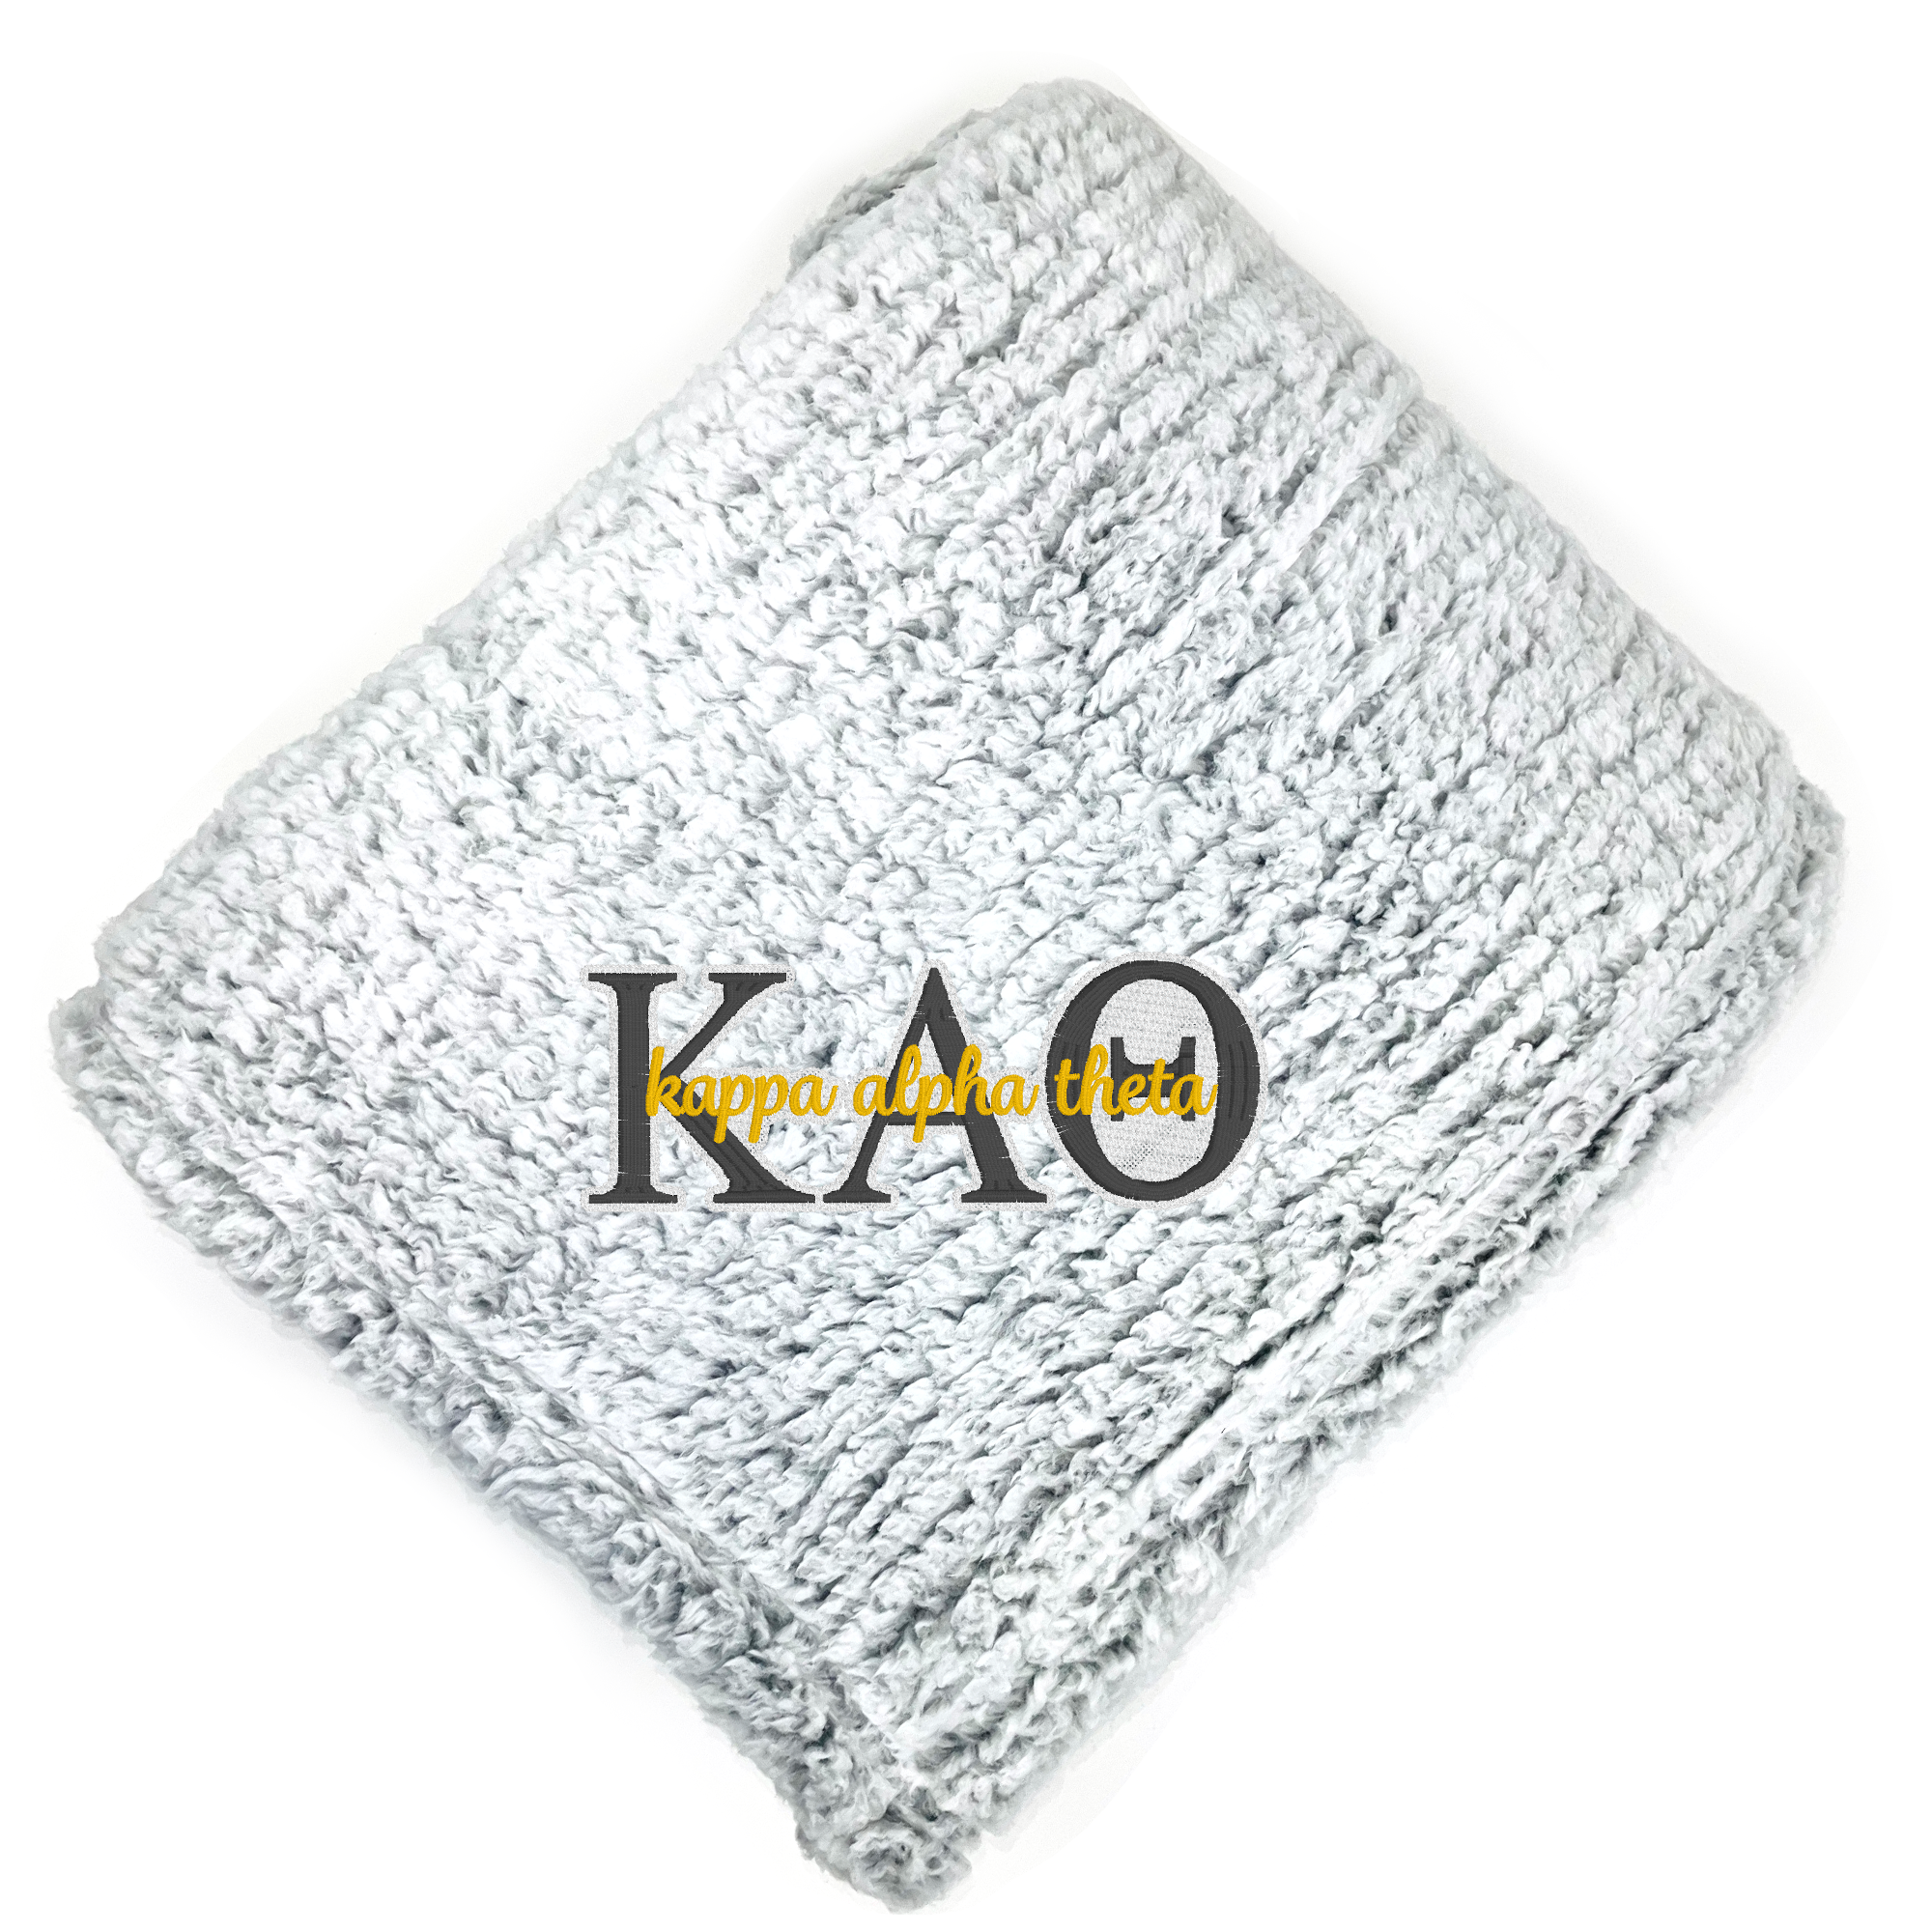 Kappa Alpha Theta Fuzzy Sherpa Blanket - Go Greek Chic